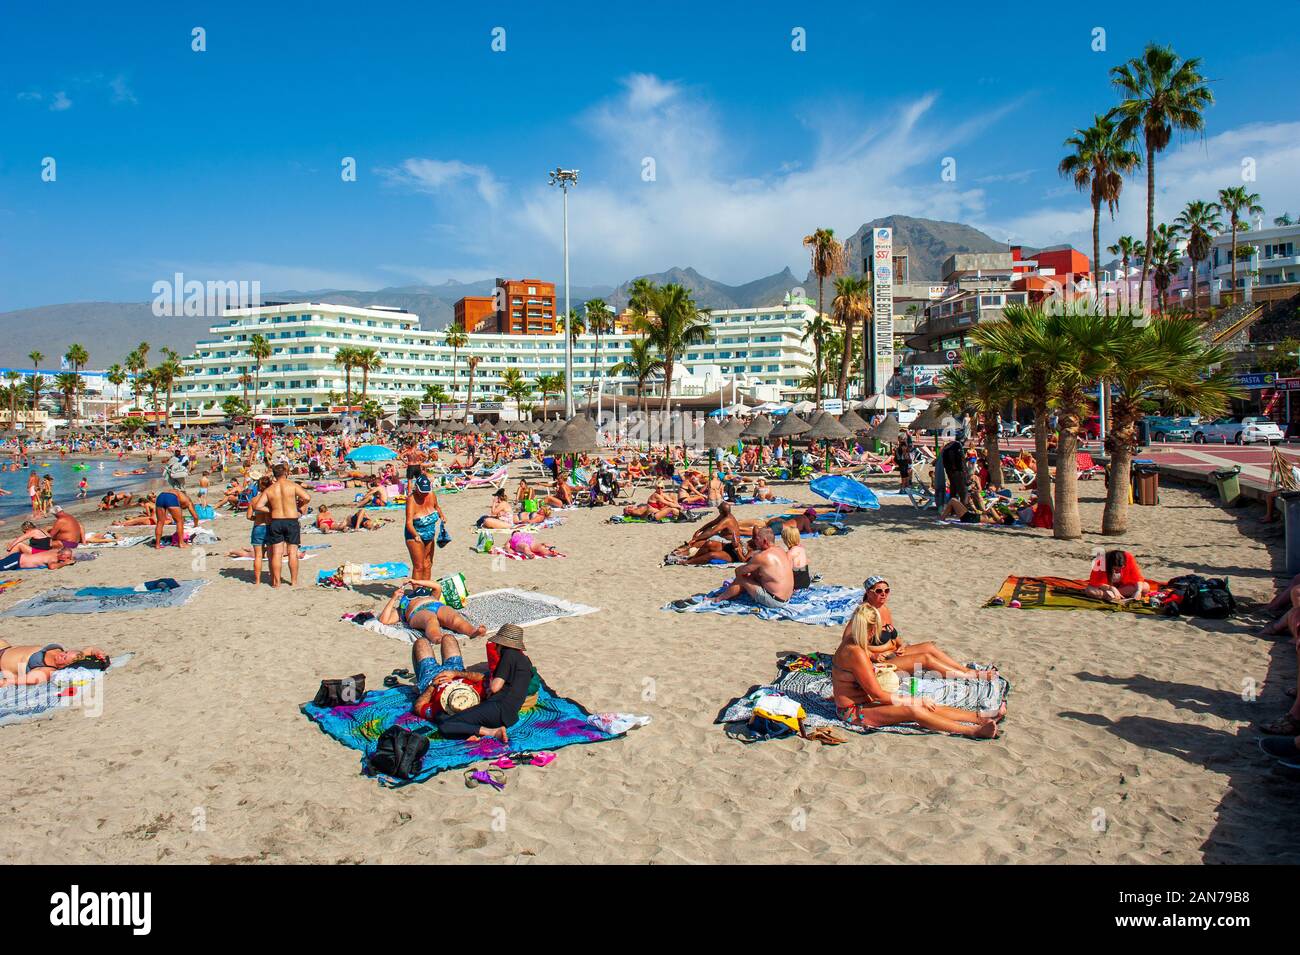 Isola Canarie TENERIFE, Spagna - 26 Dic, 2019: i turisti sono rilassanti su playa la pinta Puerto Colon. Una spiaggia molto popolare nei pressi della città di San Eugenio. Foto Stock